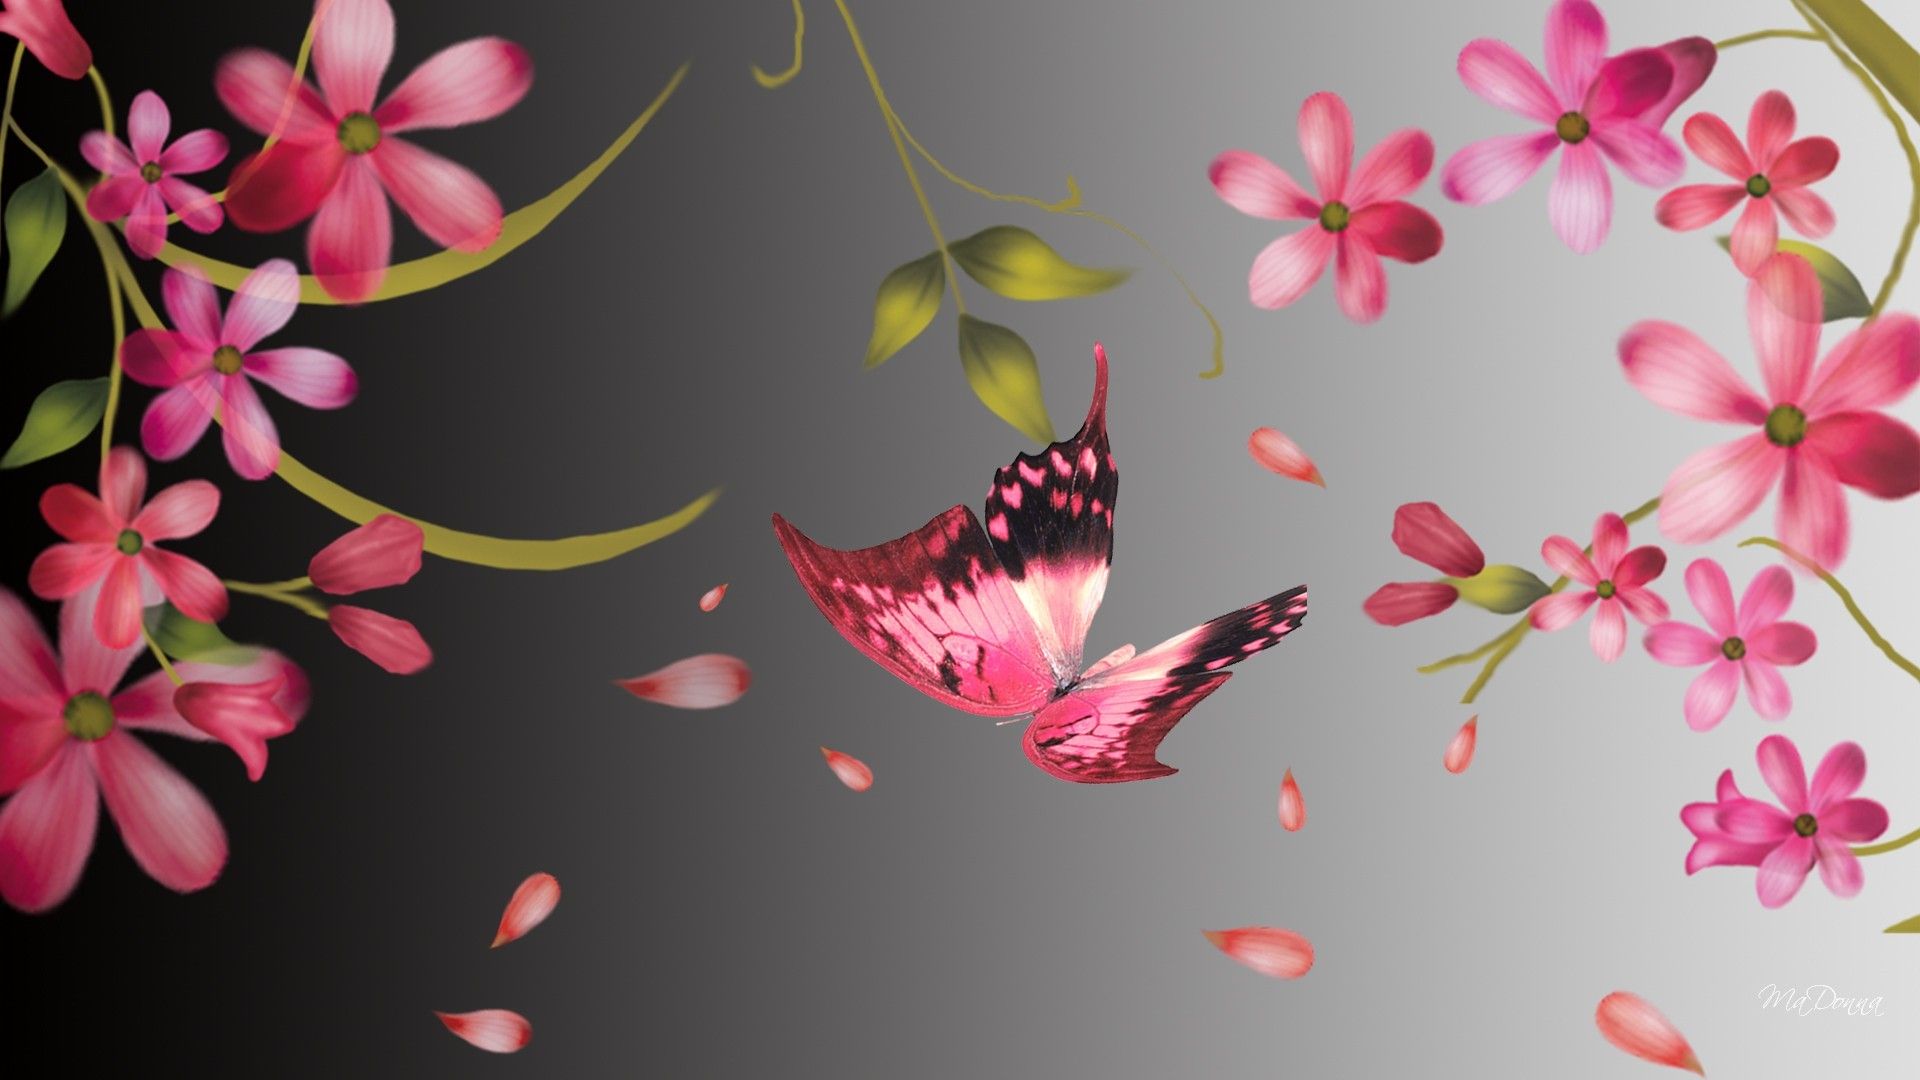 بک گراند گرافیکی بهار زیبا با تم گل و پروانه صورتی